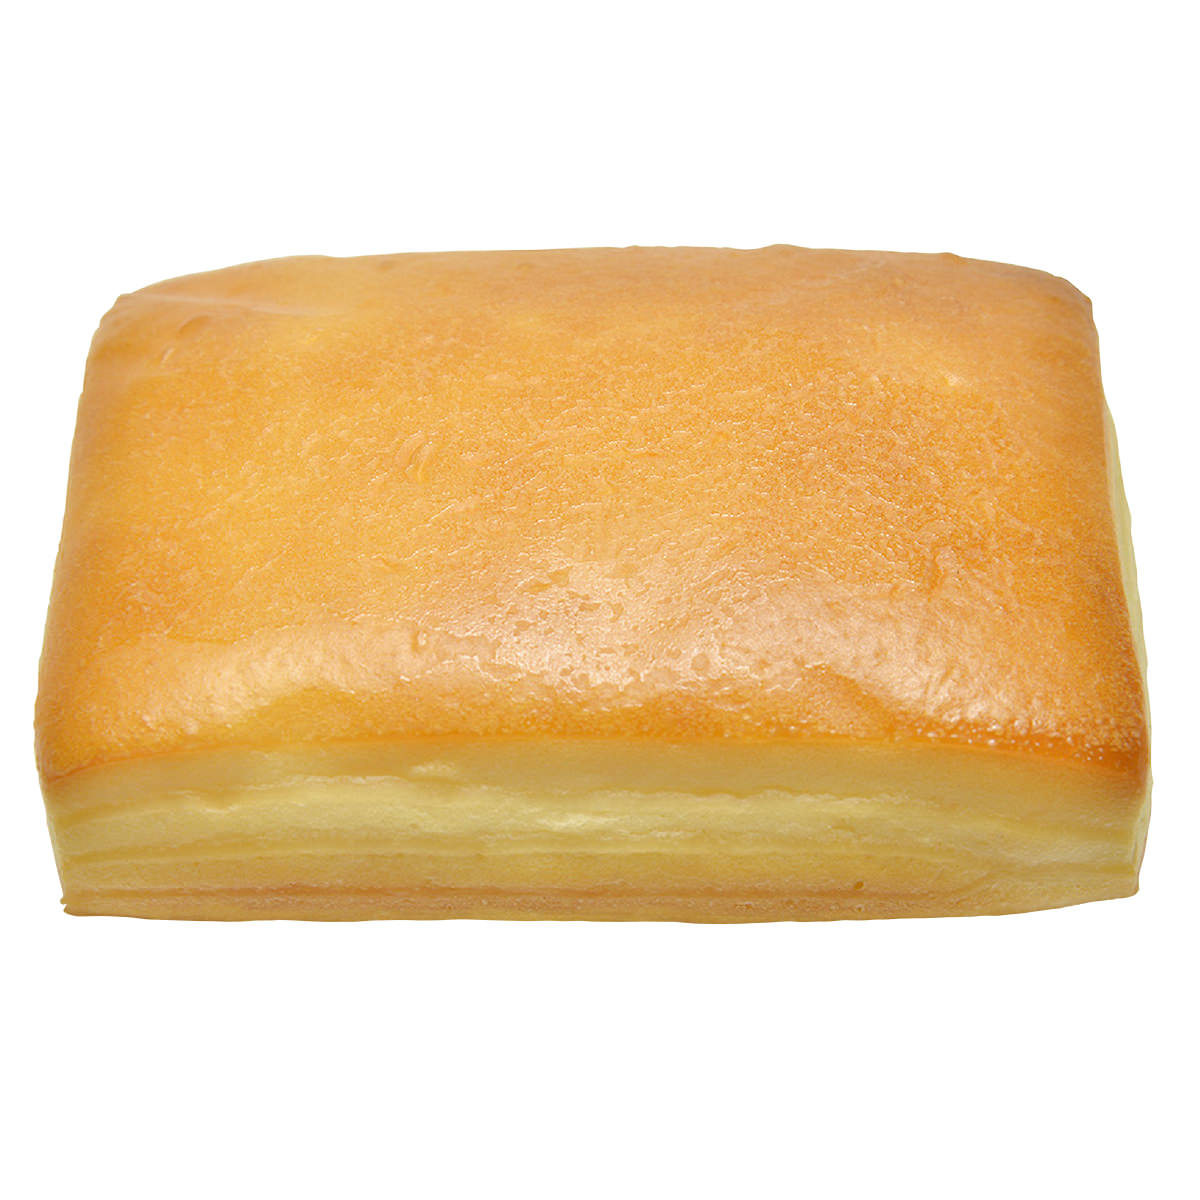 尾西のひだまりパン プレーン 6個入6袋セット 〔(70g×6)×6〕 非常食 パン 保存食 尾西食品